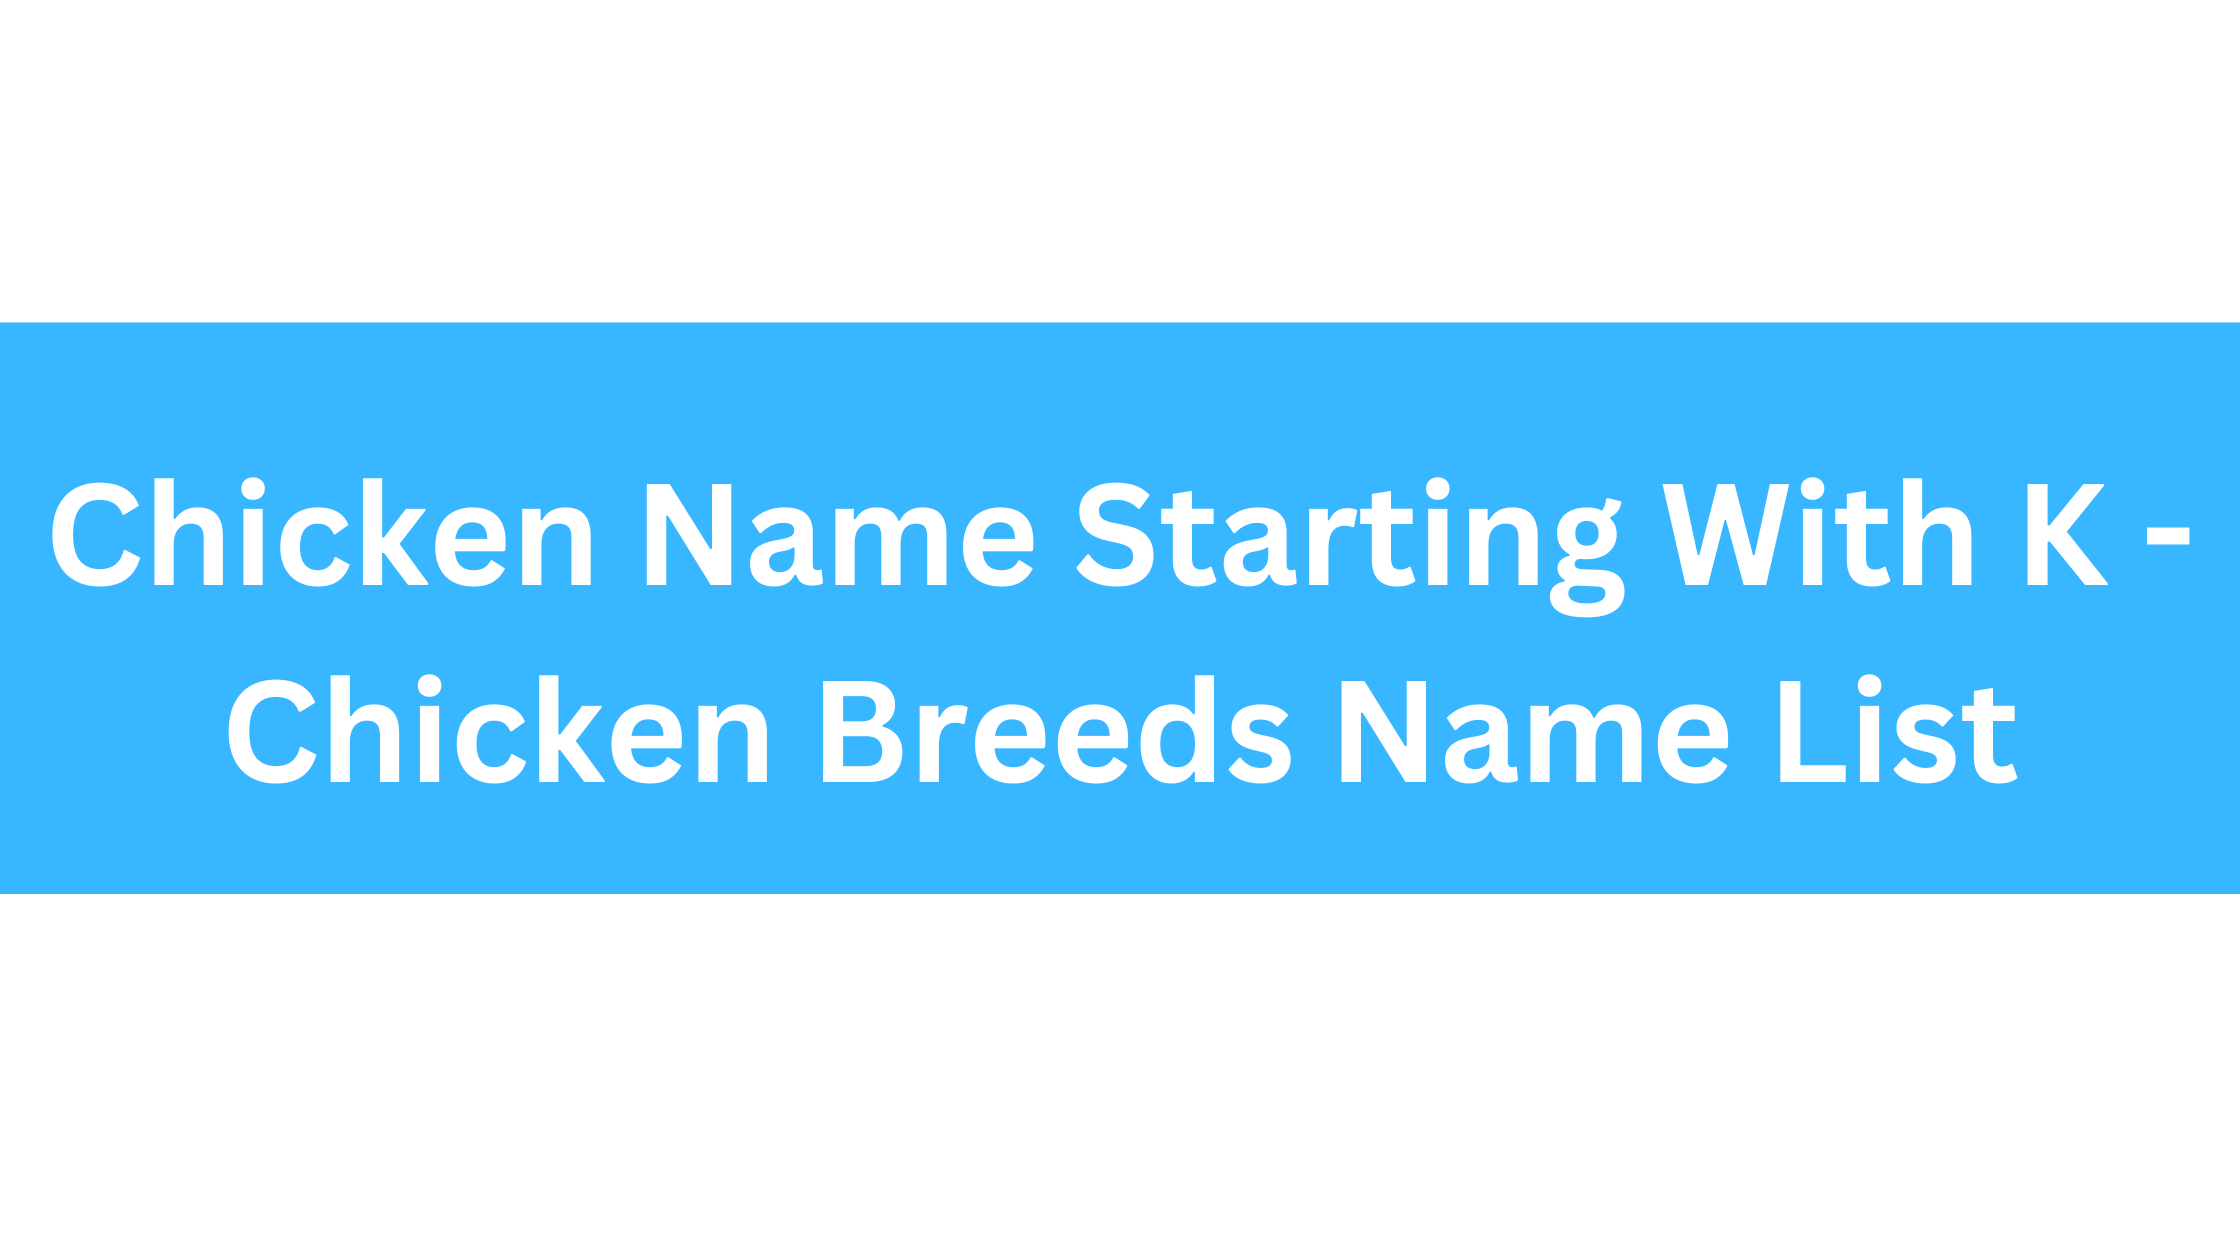 Chicken Breeds That Start With K